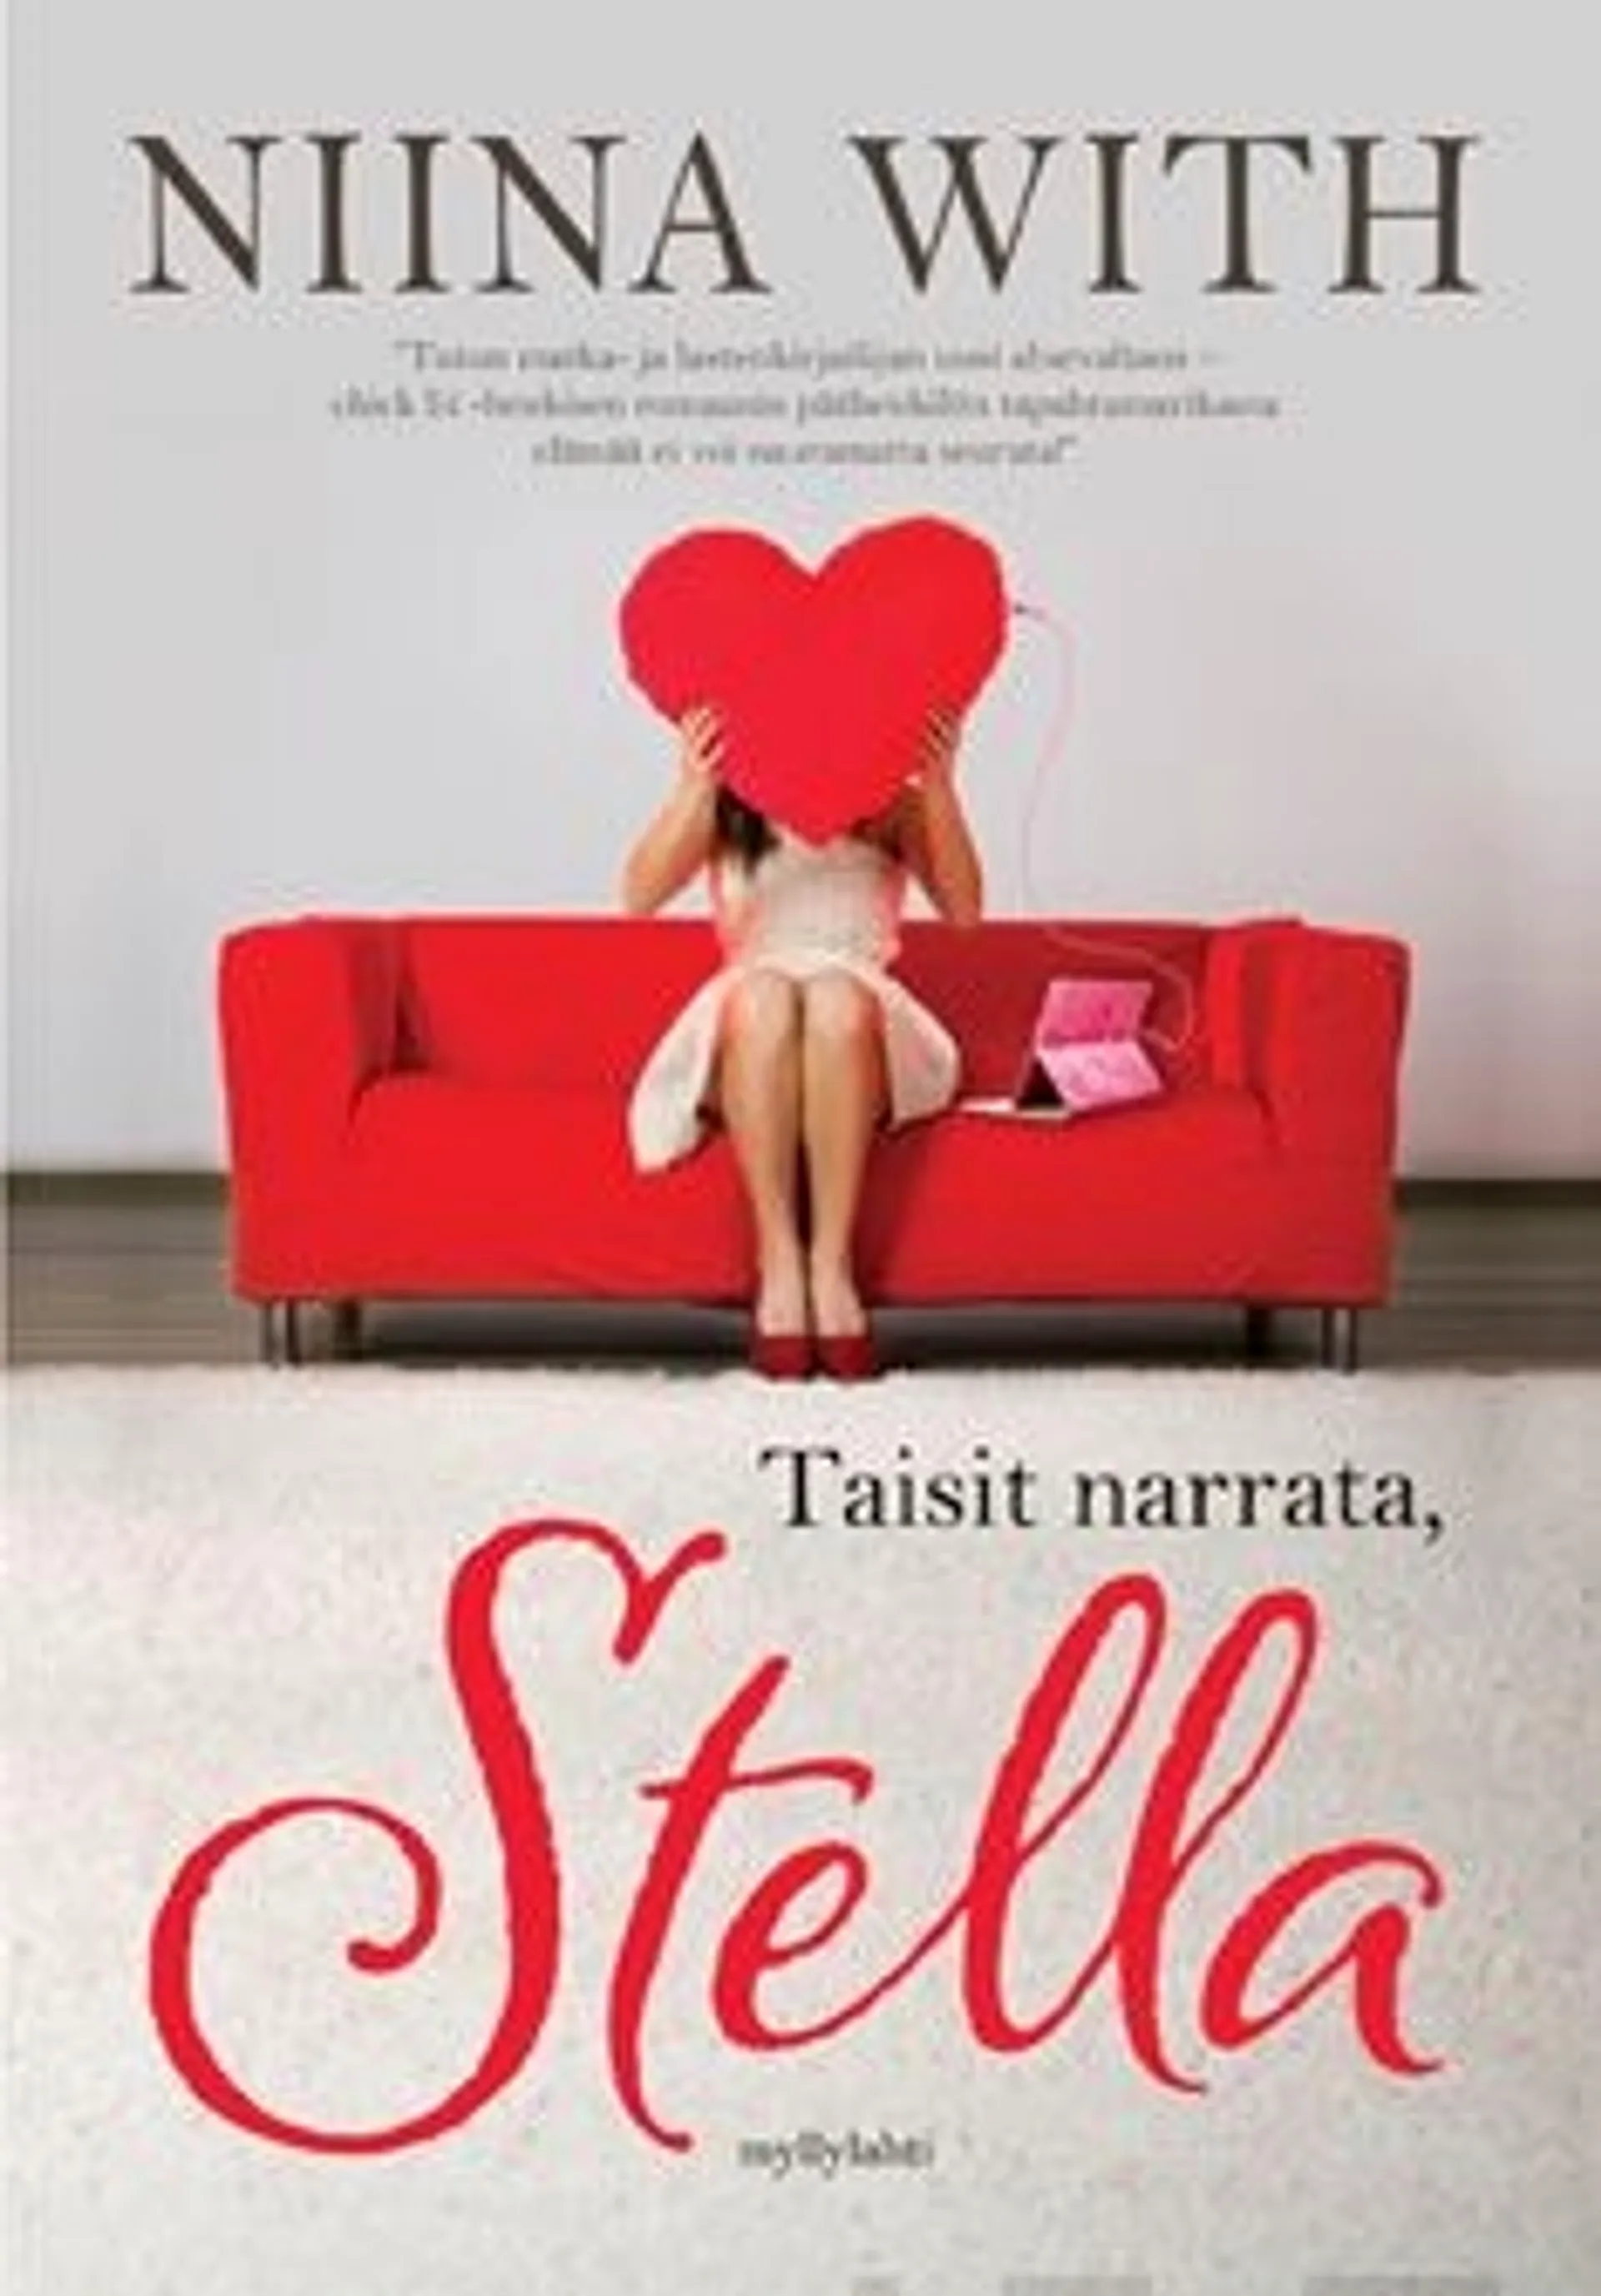 With, Taisit narrata, Stella